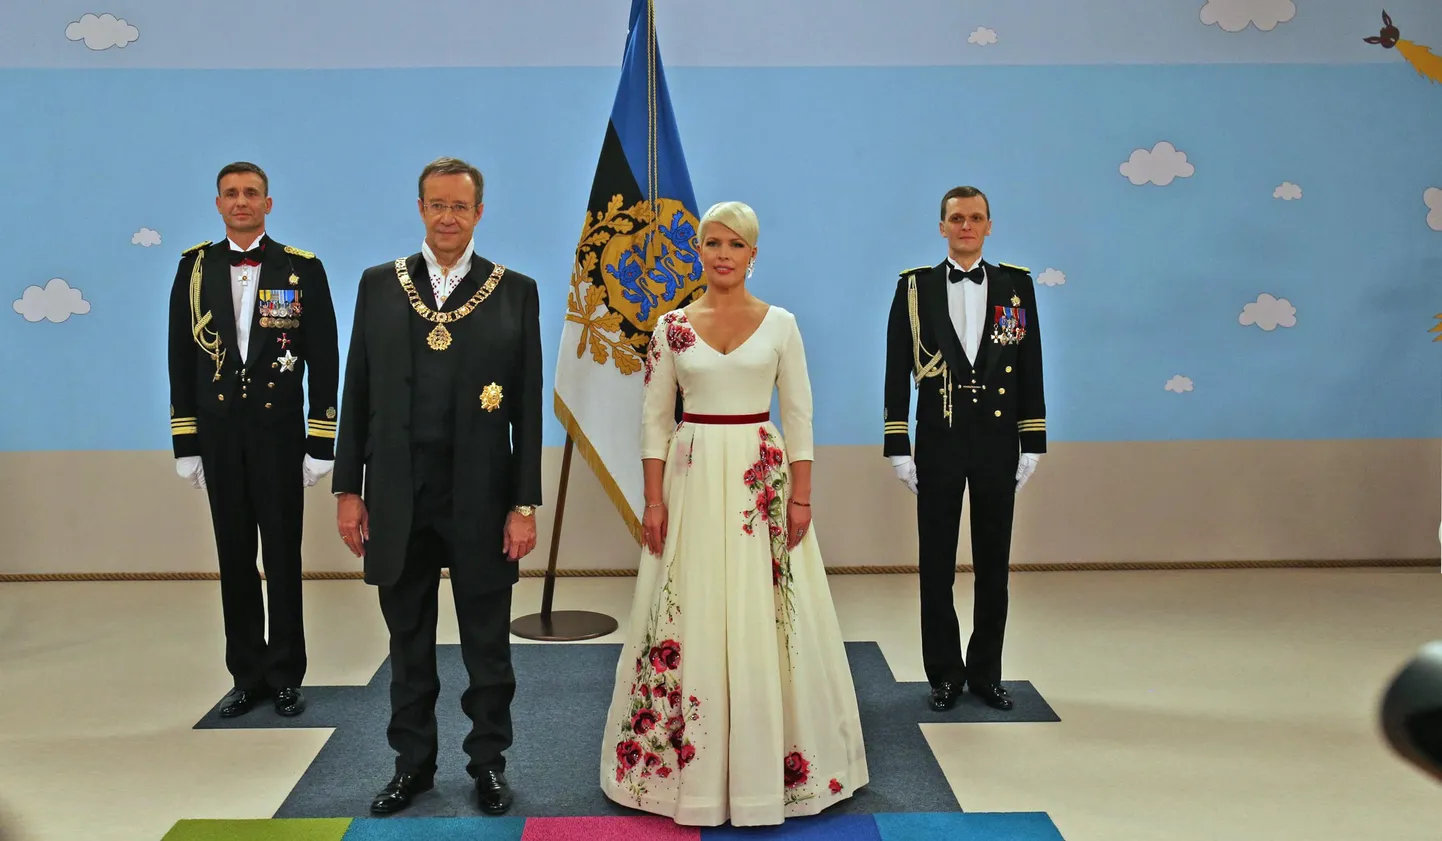 President Toomas Hendrik Ilves ja Evelin Ilves Jõhvi vastuvõtule kutsutud külaliste kätlemise eel.